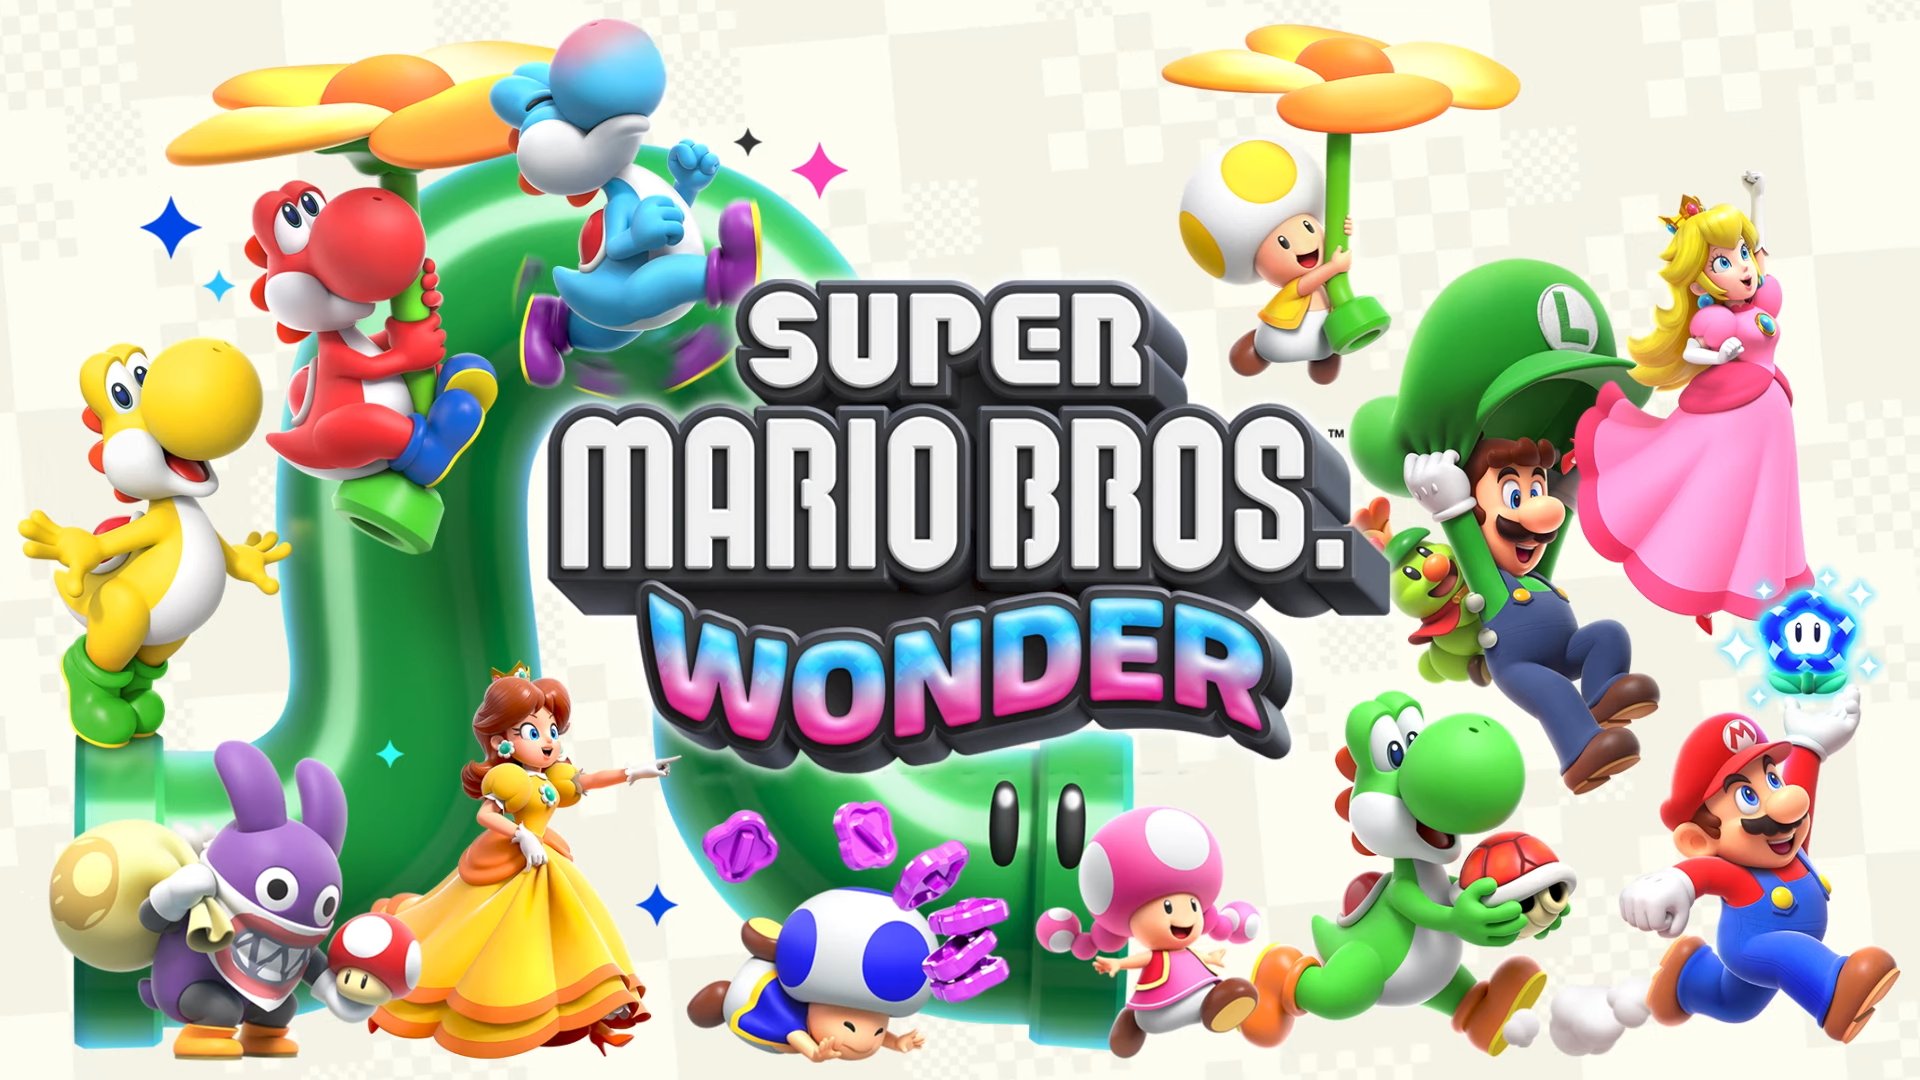 Super Mario Bros. Wonder - Release Date, Trailer, & Gameplay